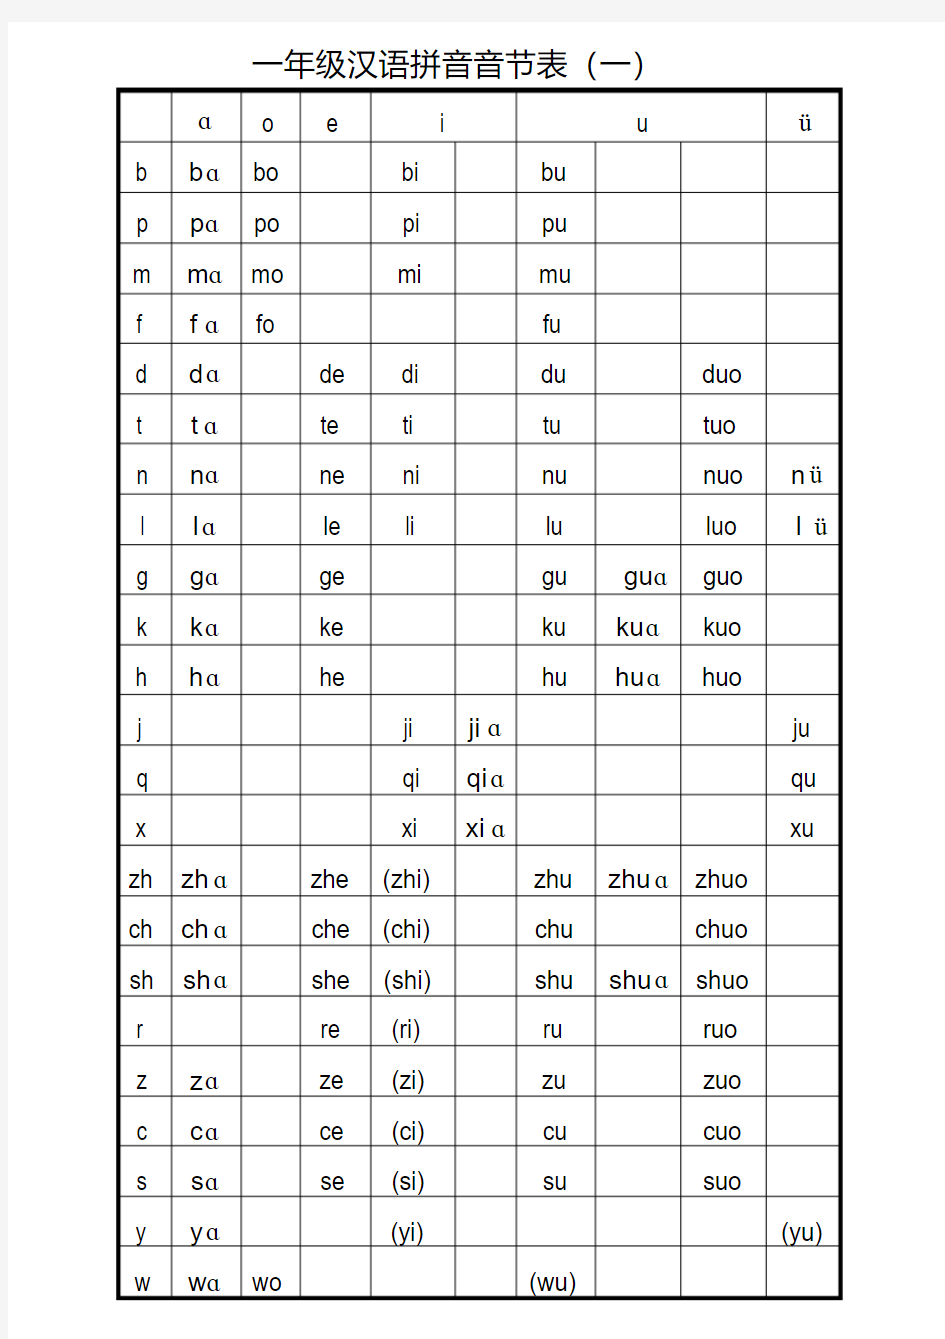 (完整版)打印版一年级汉语拼音音节表完全版